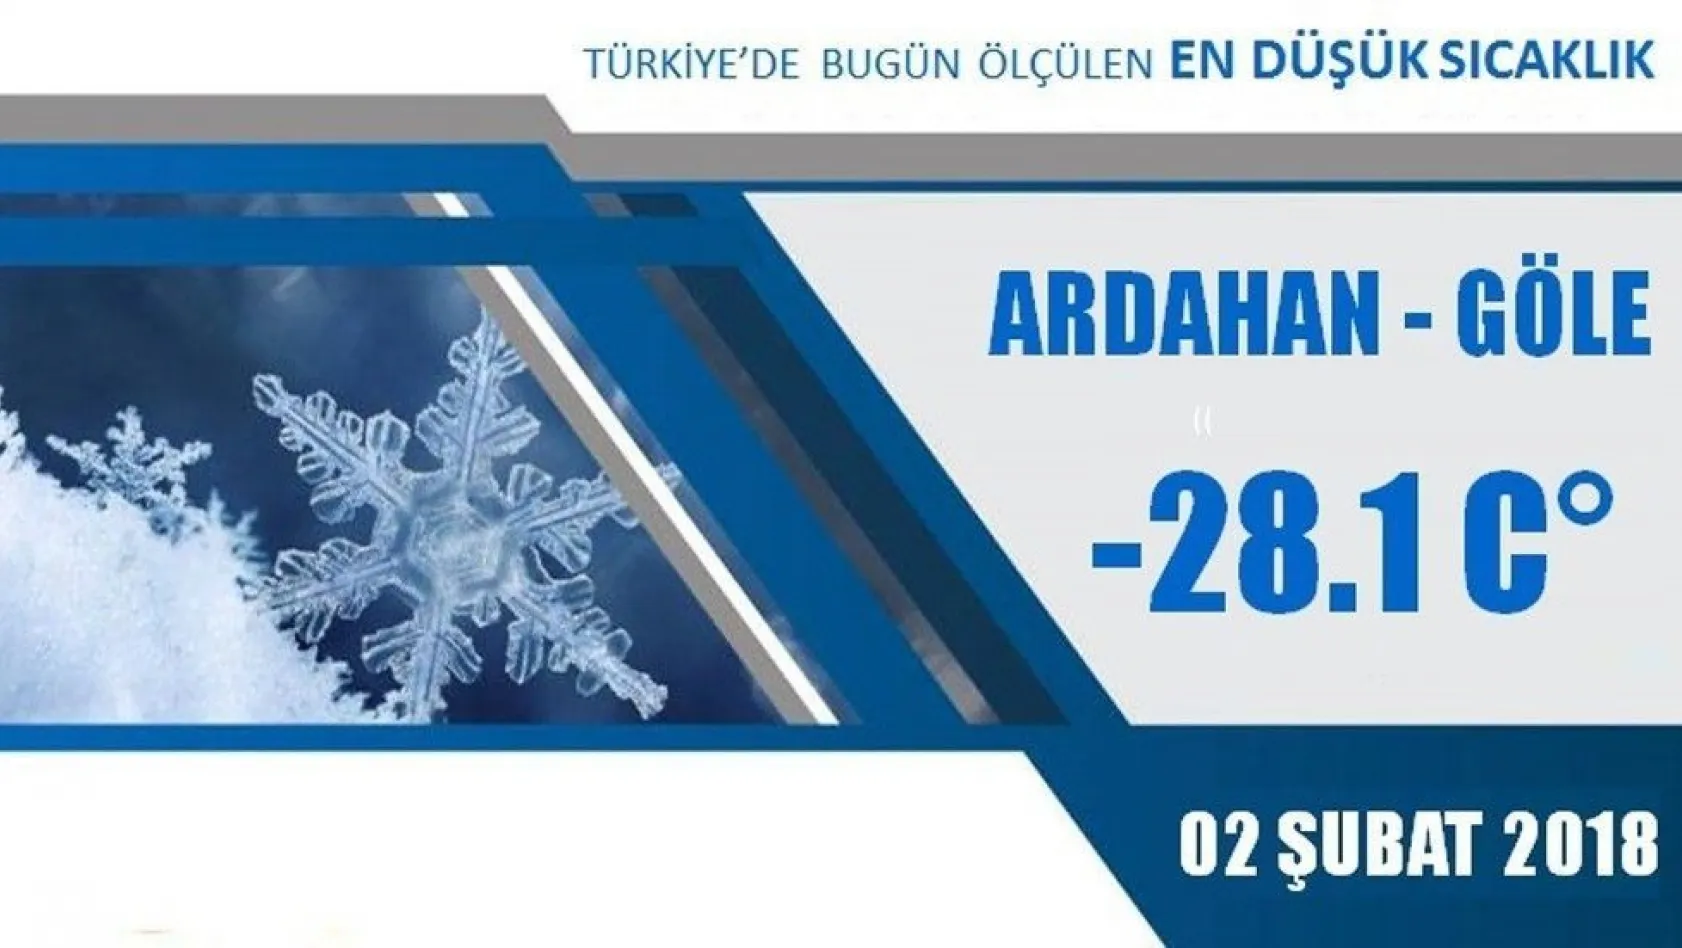 Doğu Anadolu donuyor
